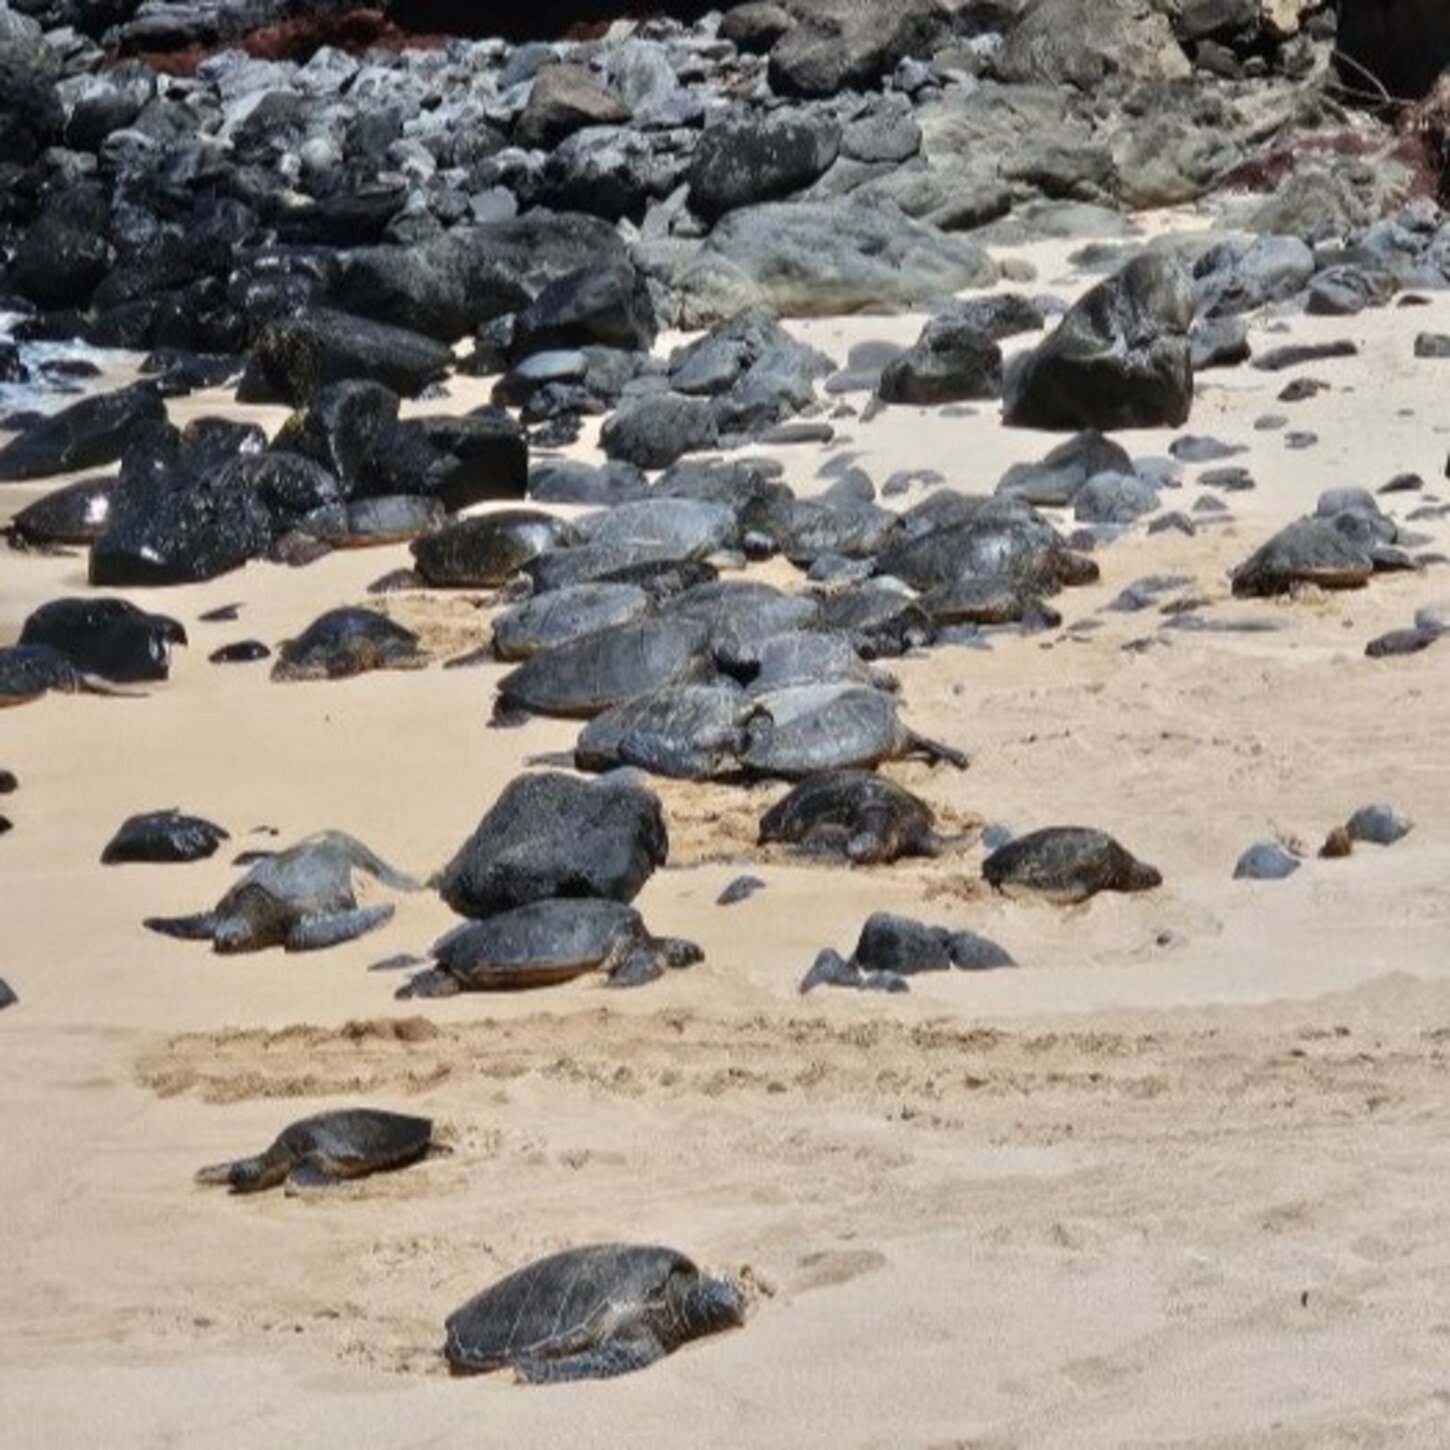 Turtles at Ho'okipa Beach